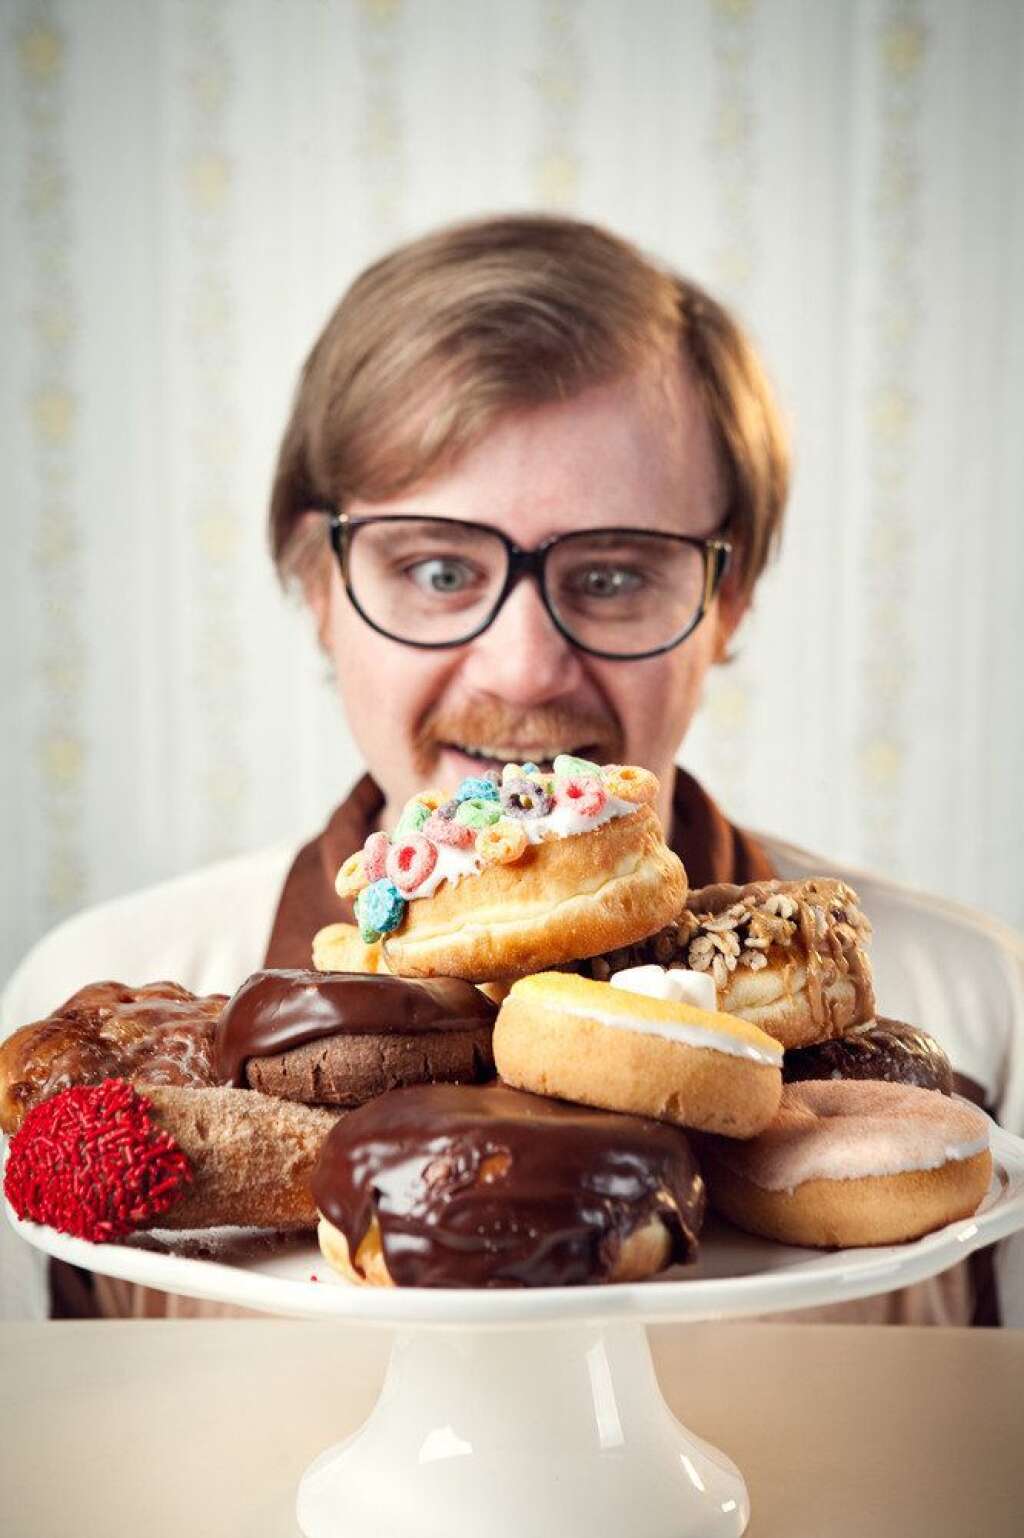 Ne pas manger trop sucré - Manger des donuts, muffins et autres pâtisseries en tout genre aurait un effet irrémédiable sur votre production de spermatozoïdes. Après une batterie de test, une <a href="http://www.dailymail.co.uk/health/article-2534856/Can-eating-doughnuts-make-men-infertile-Its-not-just-having-children-Infertility-linked-early-death-causes-surprise-you.html" target="_blank">équipe de scientifiques américains</a> a conclu qu'une quantité trop élevée de sucre dans l'organisme freinait la production de sperme. Une autre étude publié par la revue <a href="http://humrep.oxfordjournals.org/" target="_blank">Human Reproduction</a> explique qu'en plus de dégrader la qualité de leur sperme, les hommes qui se nourrissent exclusivement d'aliments gras et sucrés peuvent transmettre des problèmes de fertilité à leurs enfants.